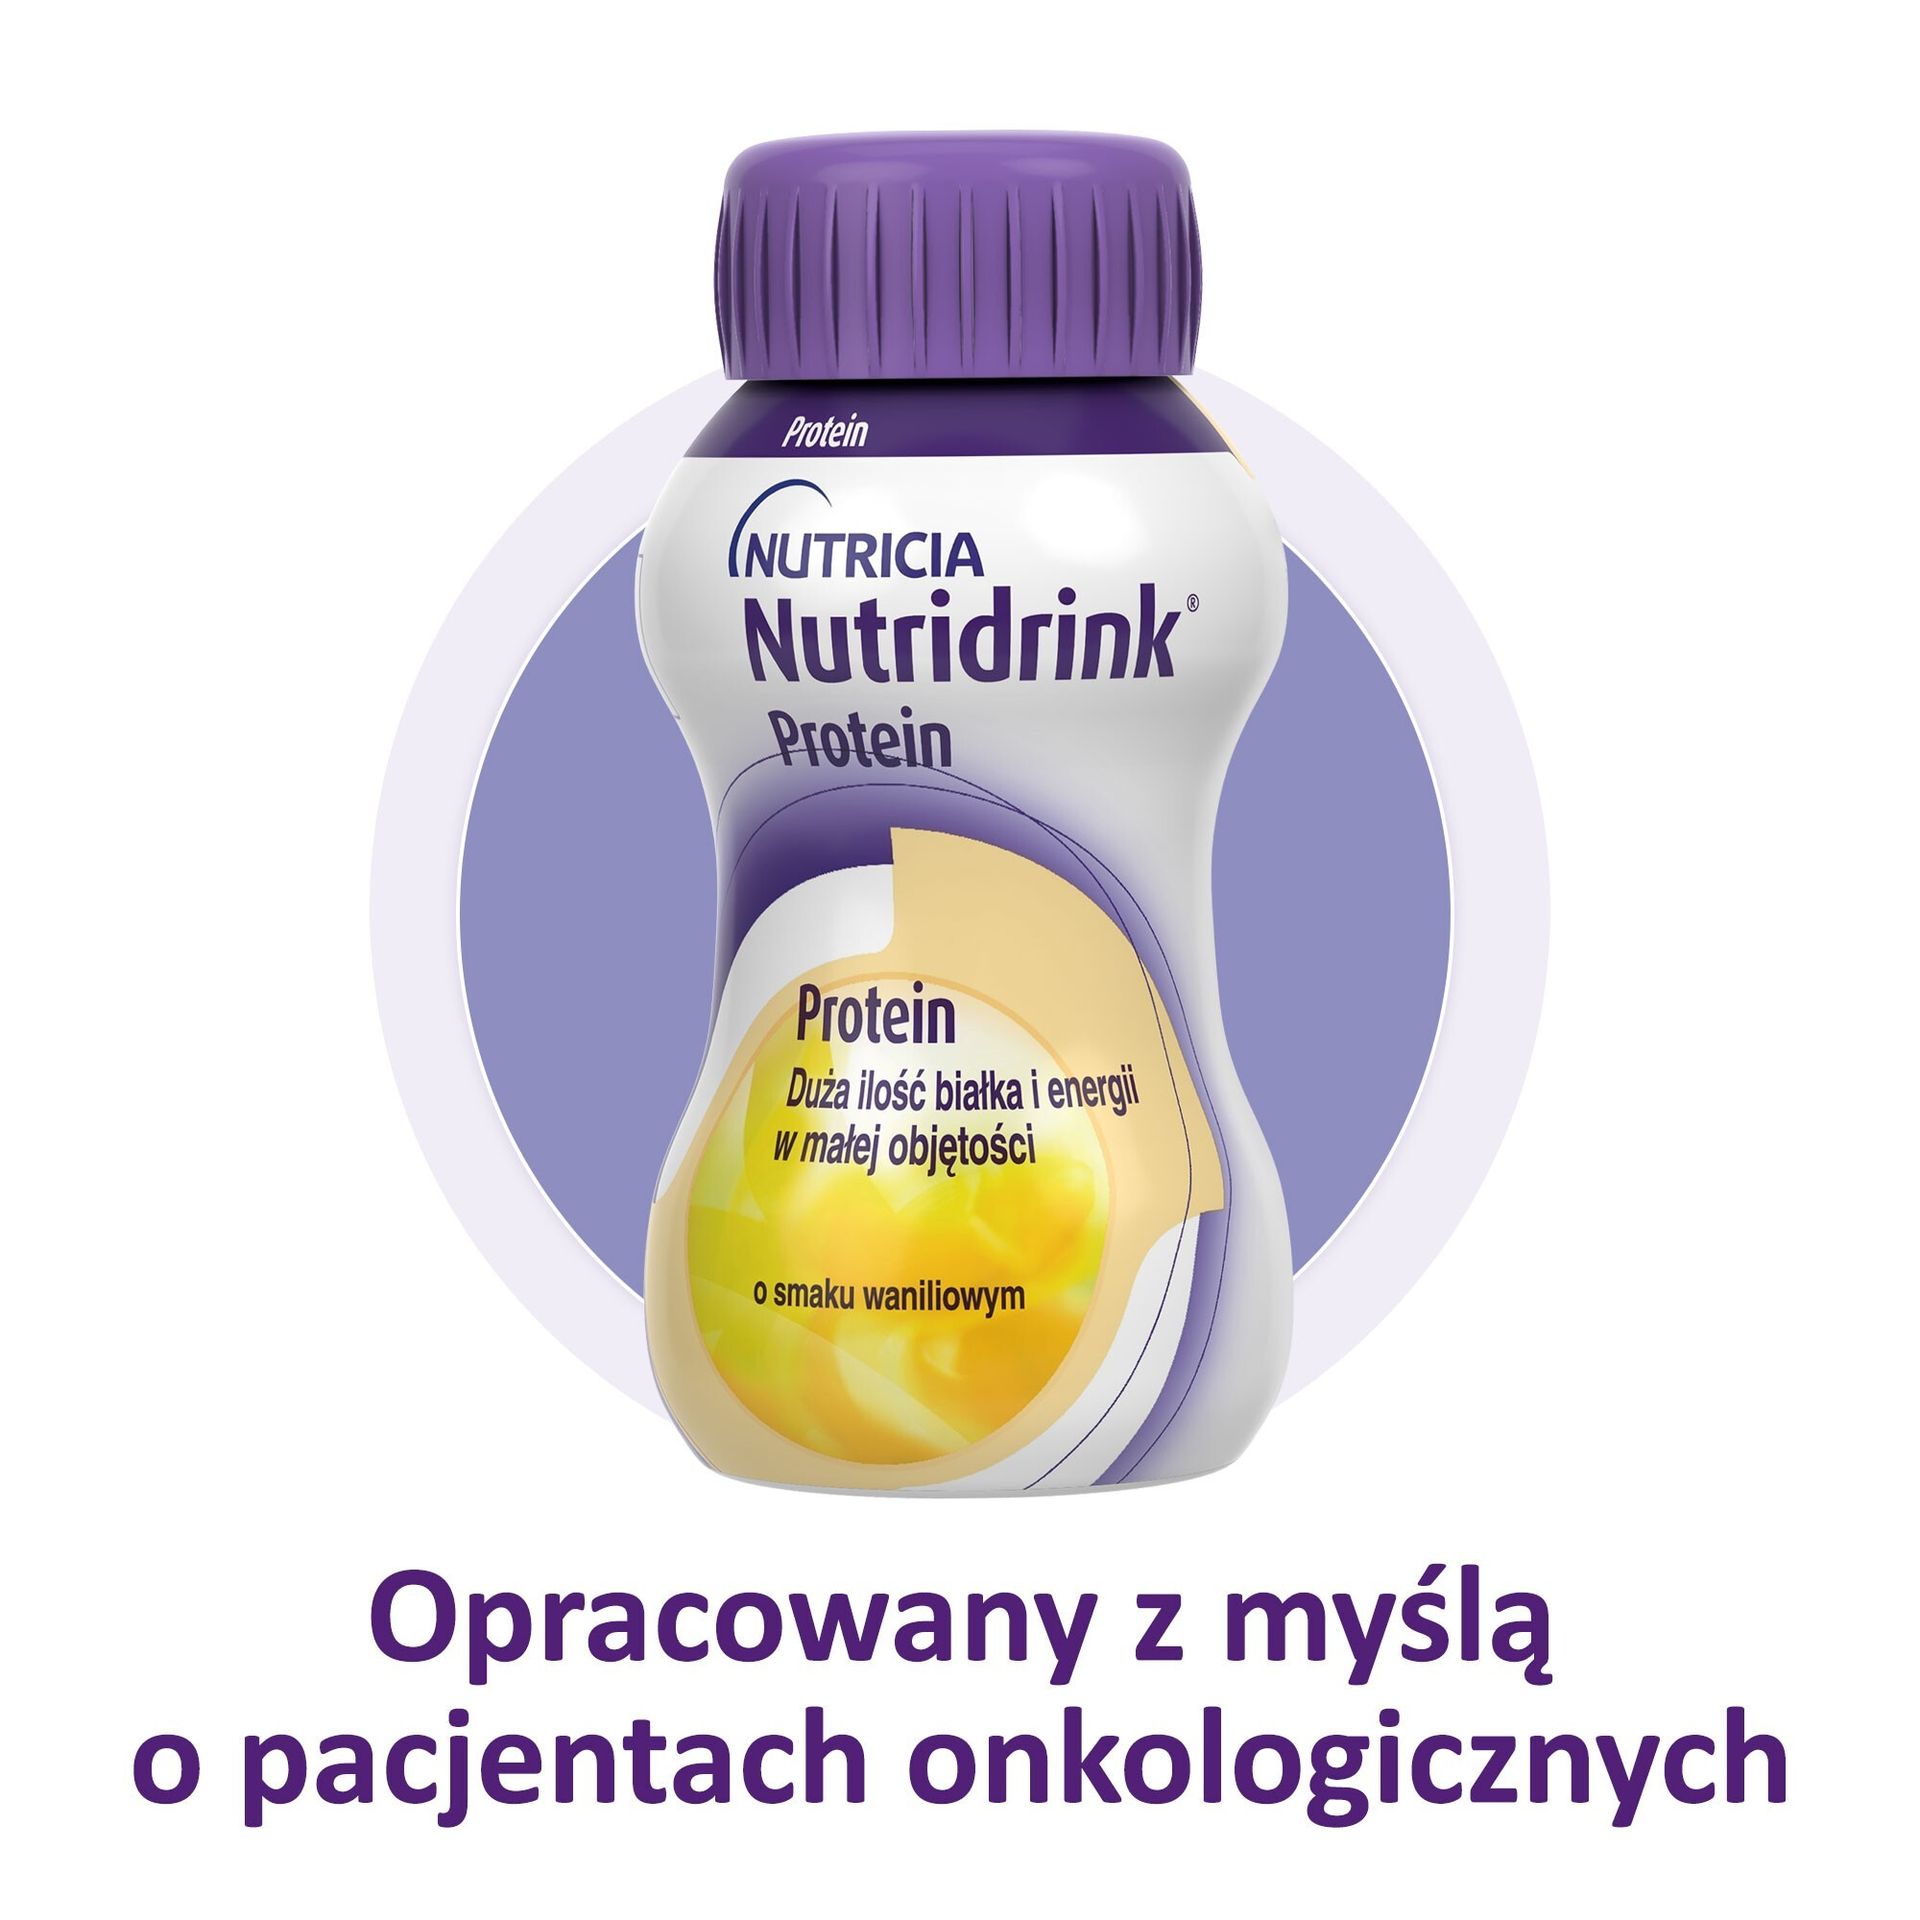 NUTRICIA POLSKA SP. Z O.O. NUTRICIA POLSKA SP Z O.O Nutridrink Protein o smaku waniliowym płyn 6 x 4 x 125 ml data ważności 16.04.2022)